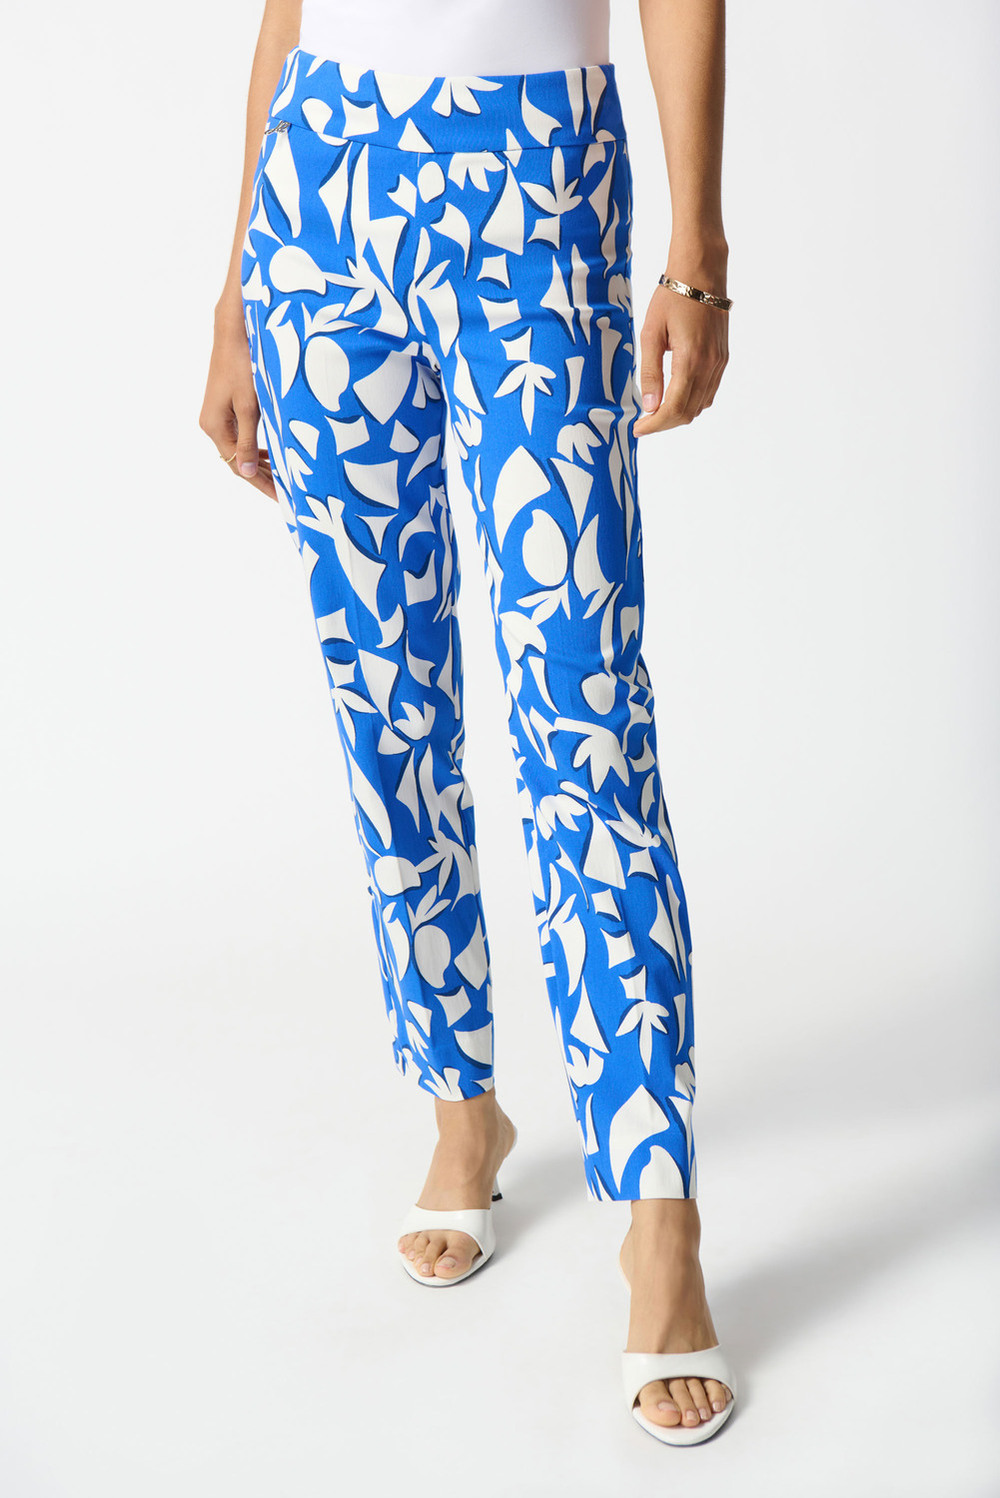 Pantalon ajusté, motifs bicolores modèle 242139. Blue/vanilla